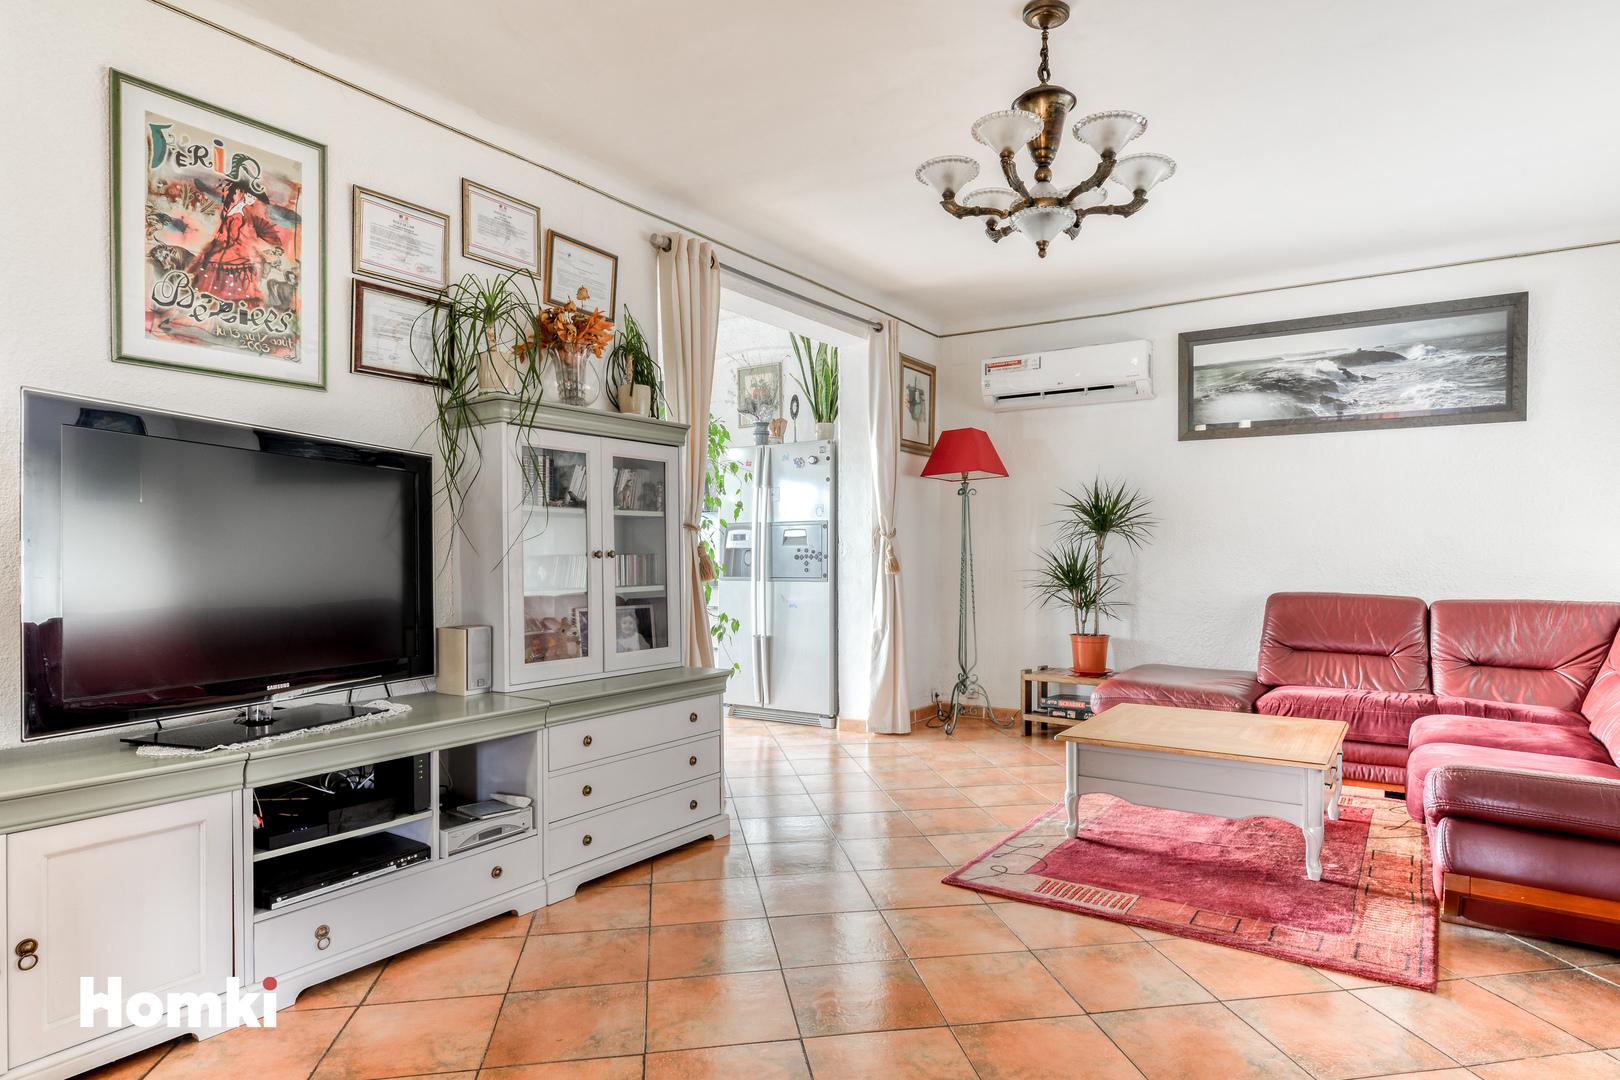 Homki - Vente Maison/villa  de 160.0 m² à Béziers 34500